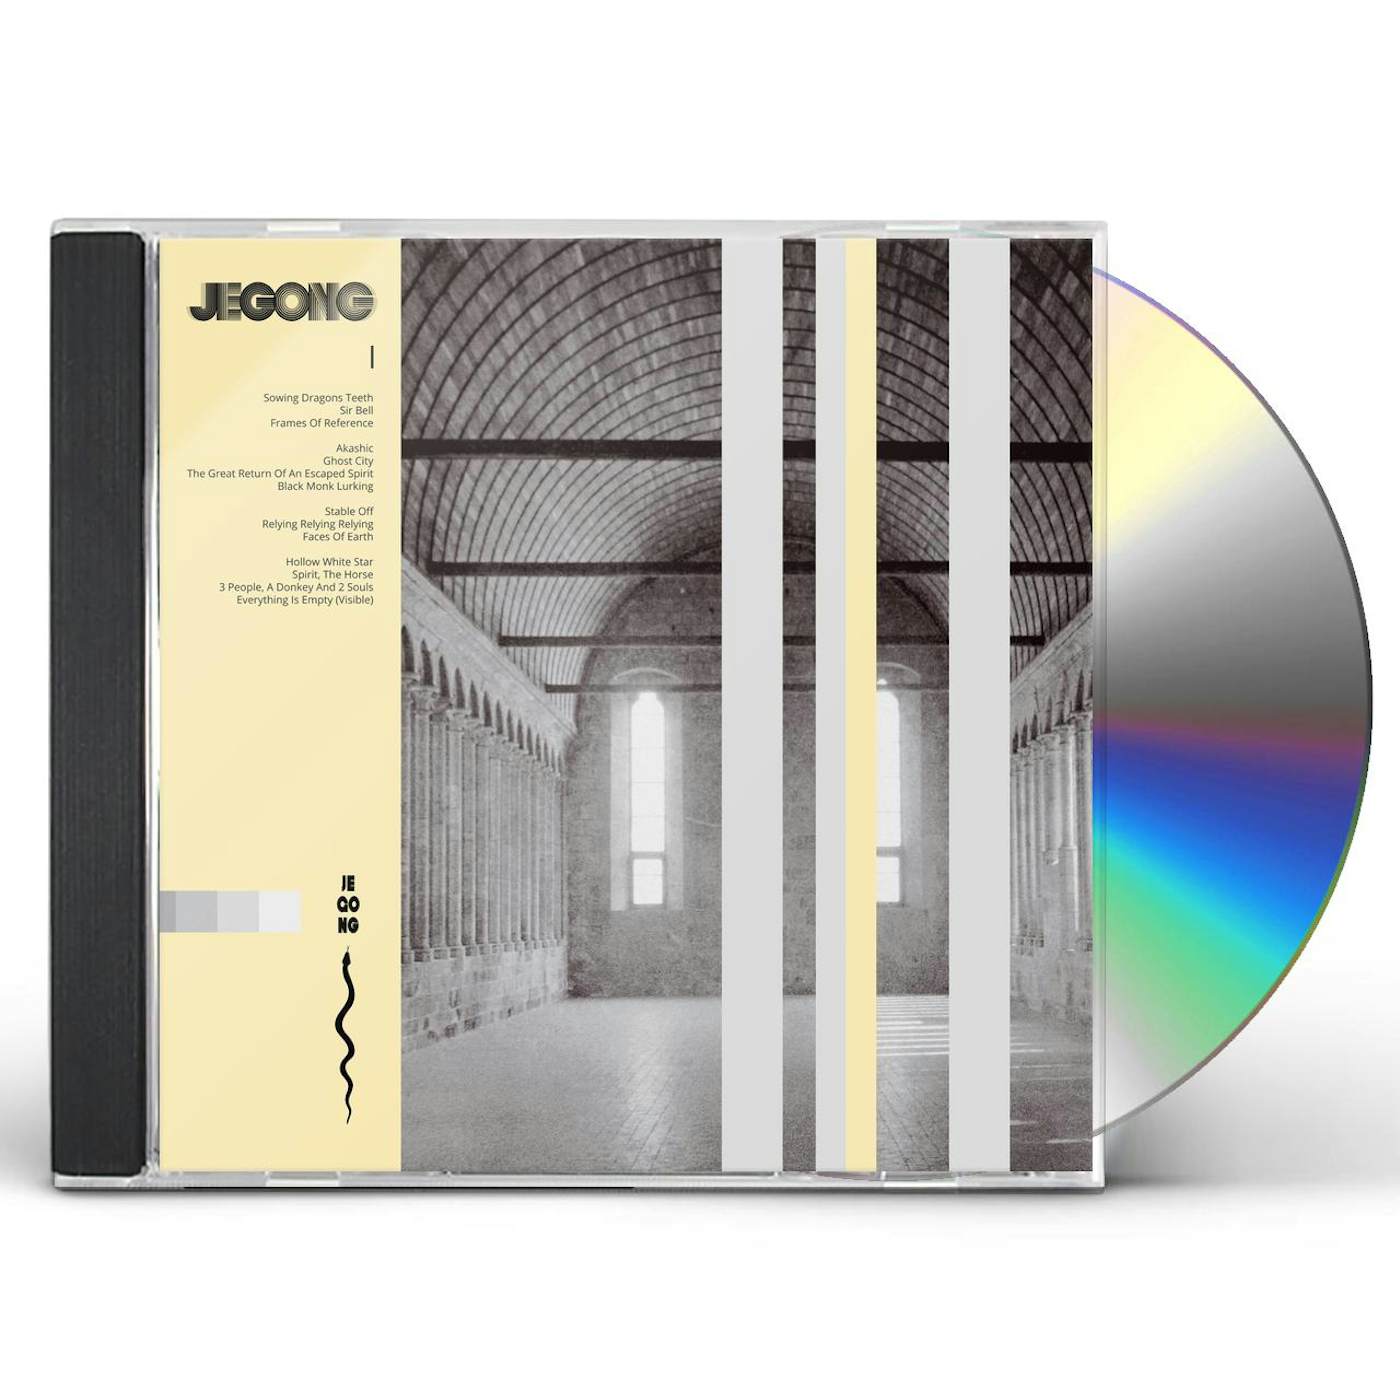 JeGong I CD